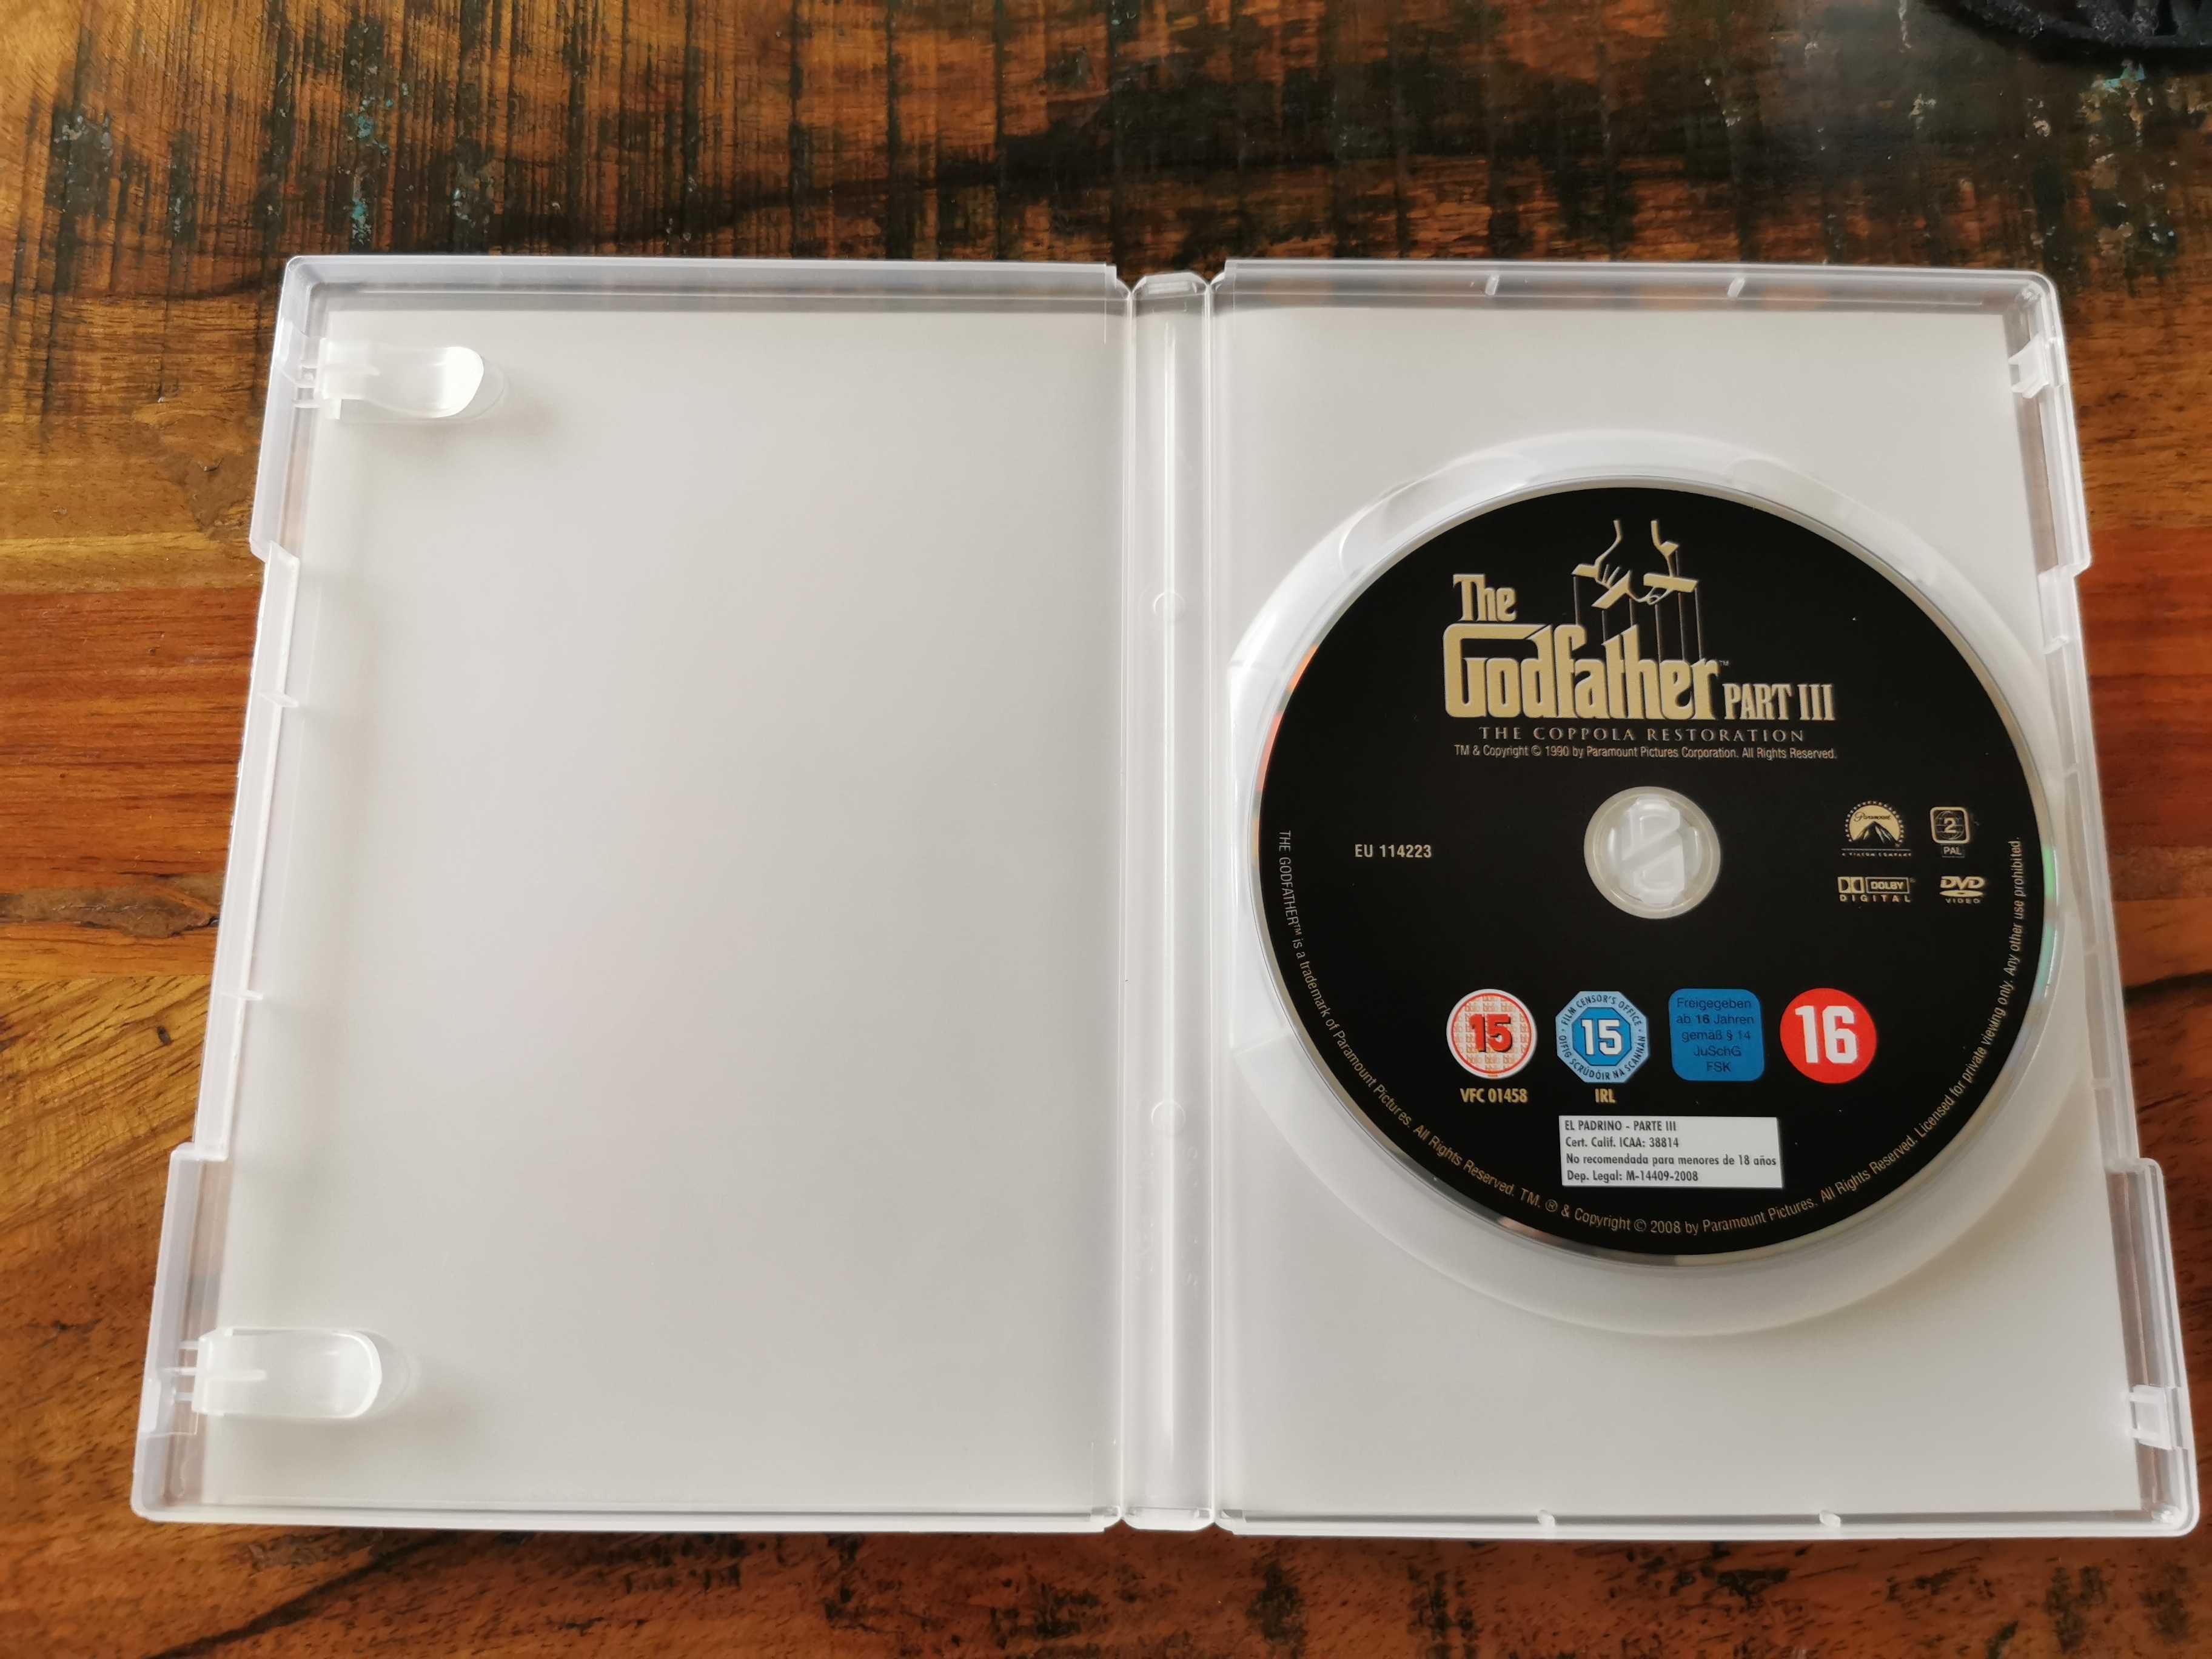 Ojciec Chrzestny III - DVD